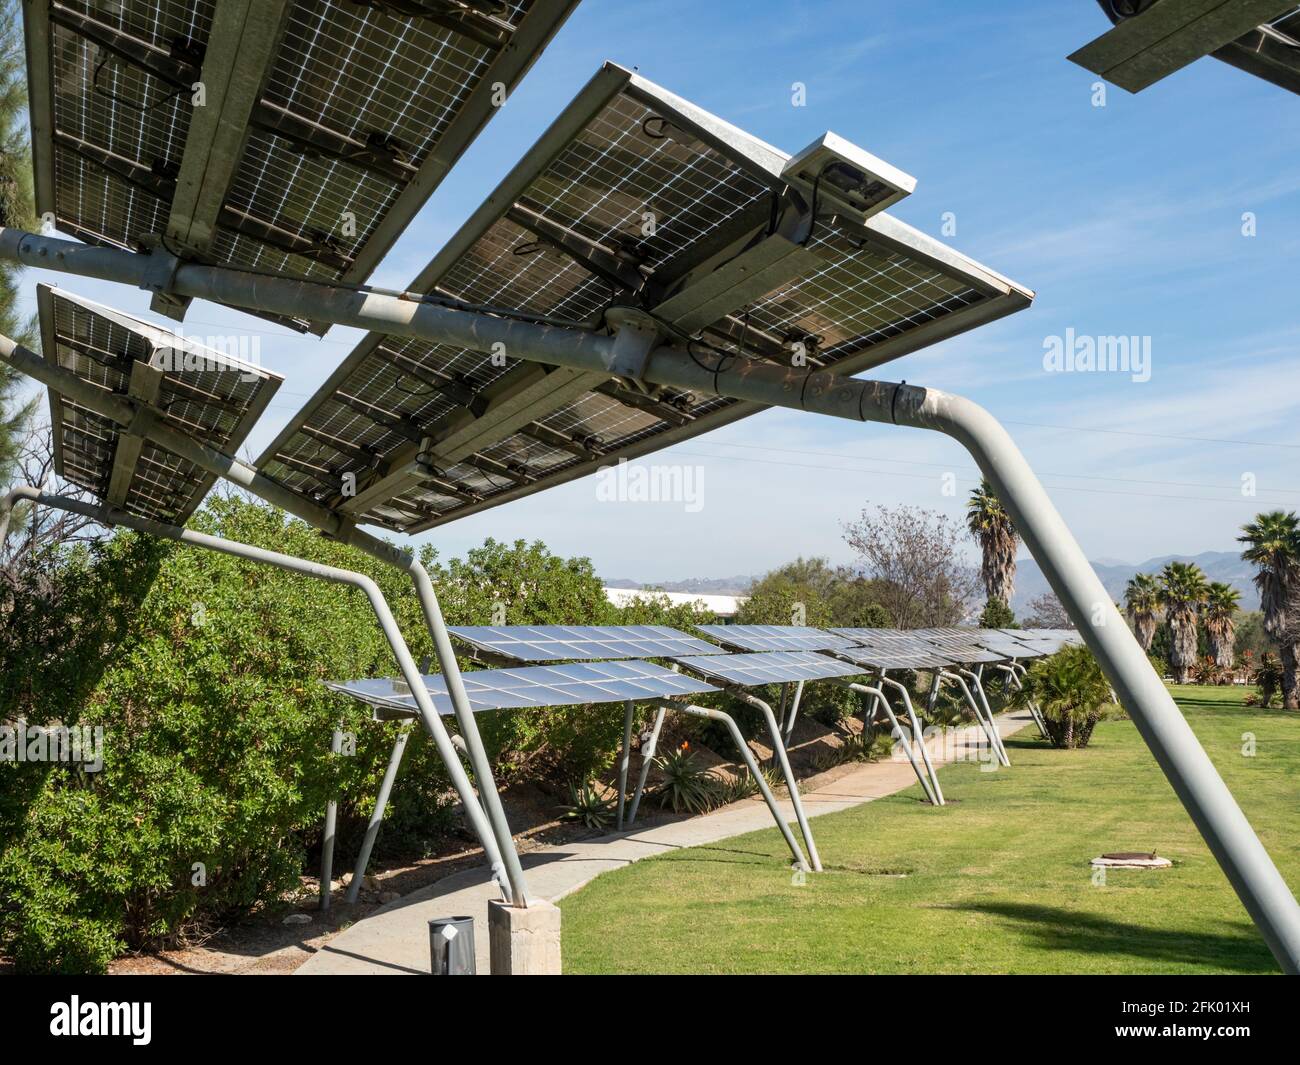 Cellules solaires photovoltaïques sur une structure métallique le long d'un chemin dans la campagne Banque D'Images